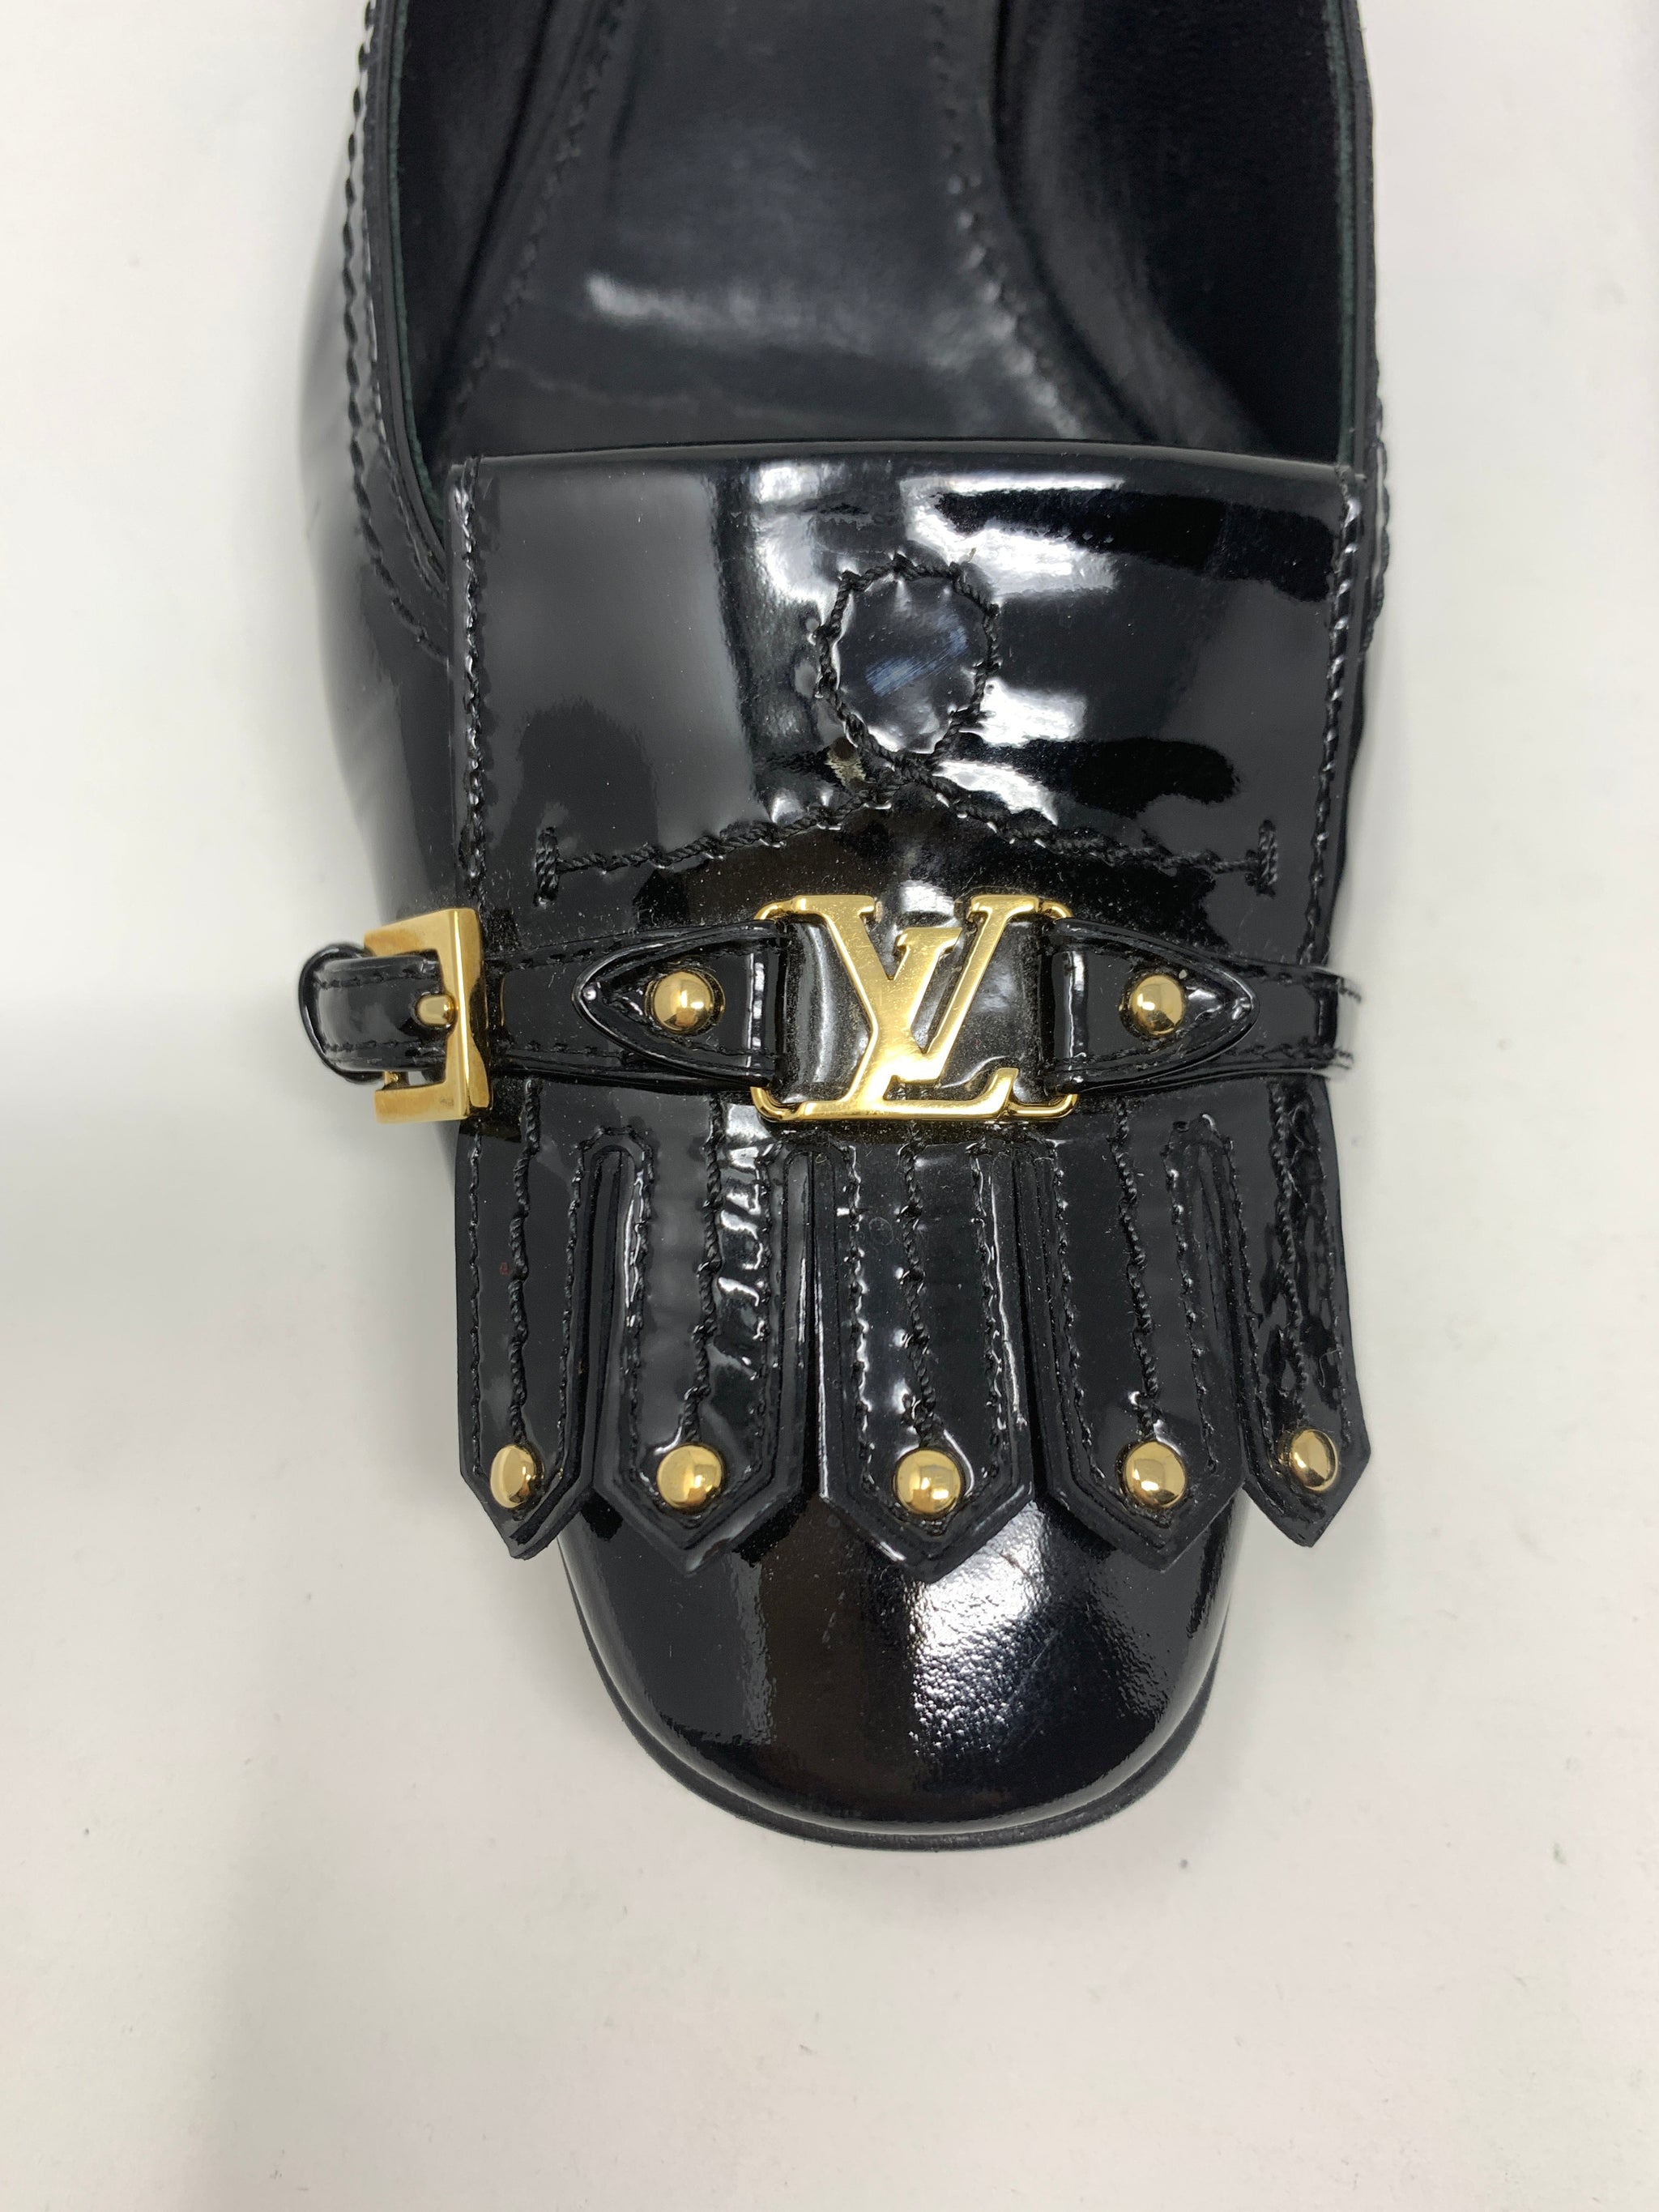 Louis Vuitton Black Patent Leather Shoes!